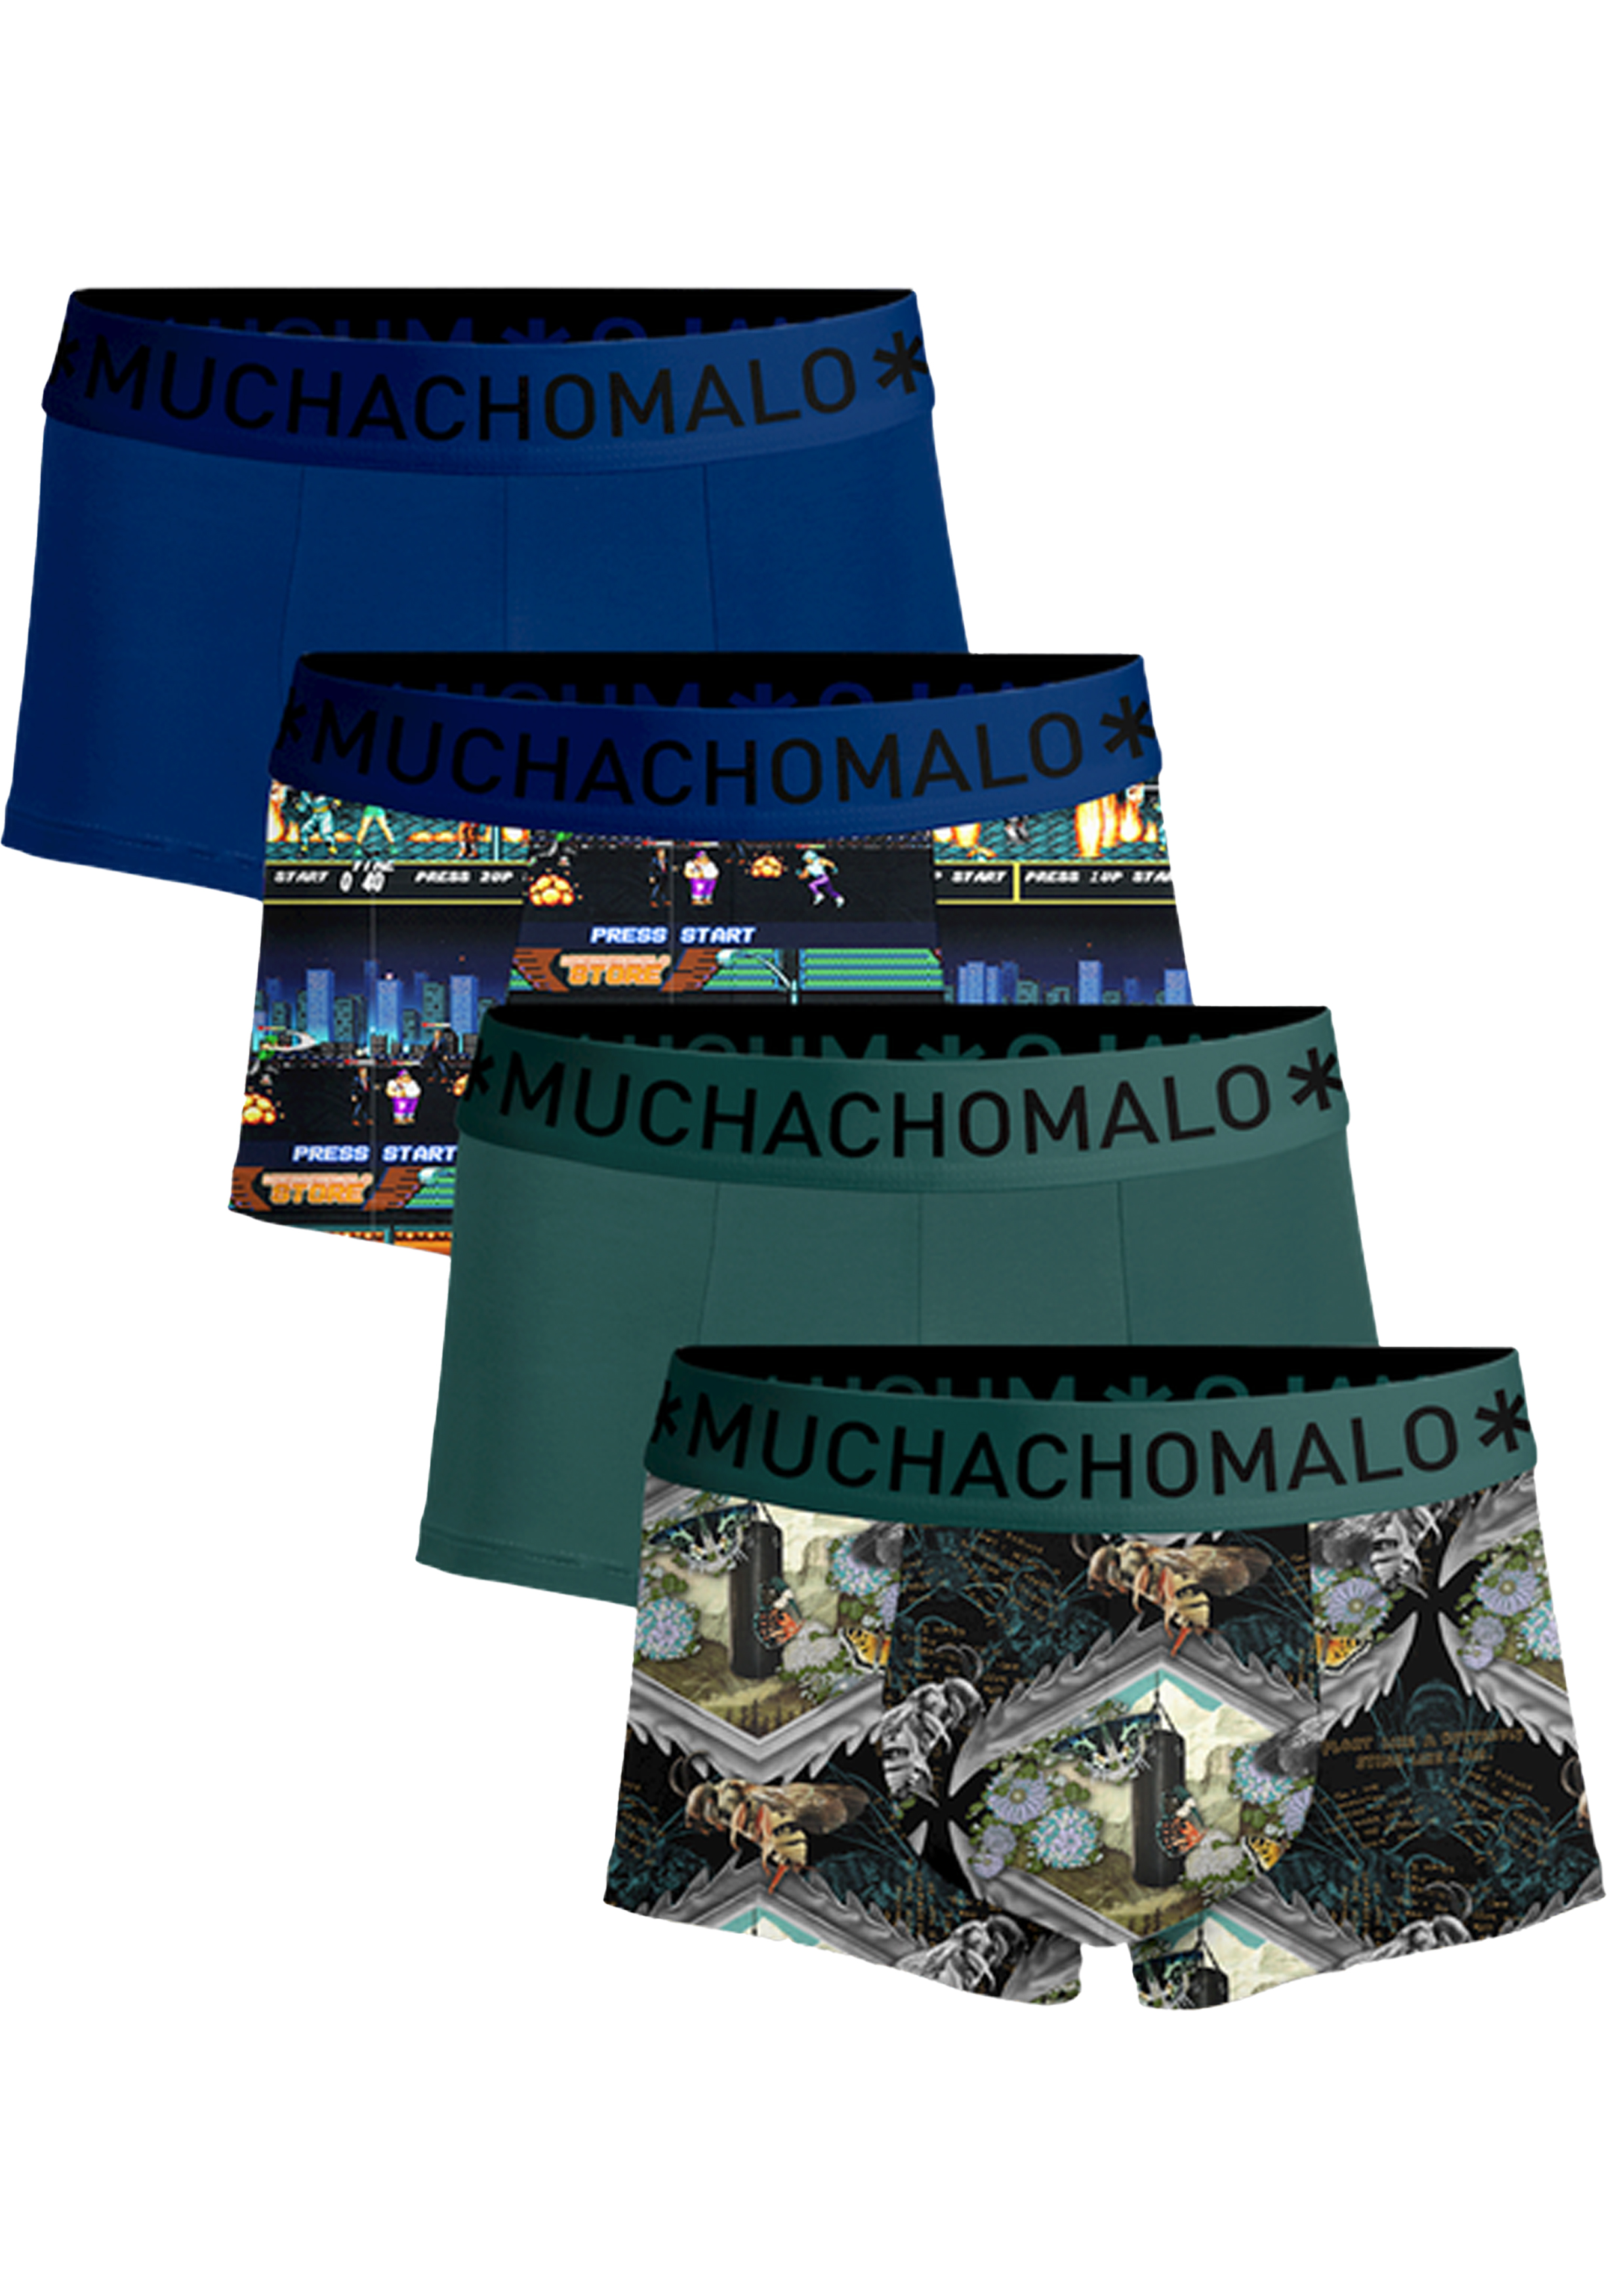 Muchachomalo boxershorts, heren boxers kort (4-pack), Muhammad Ali Experience